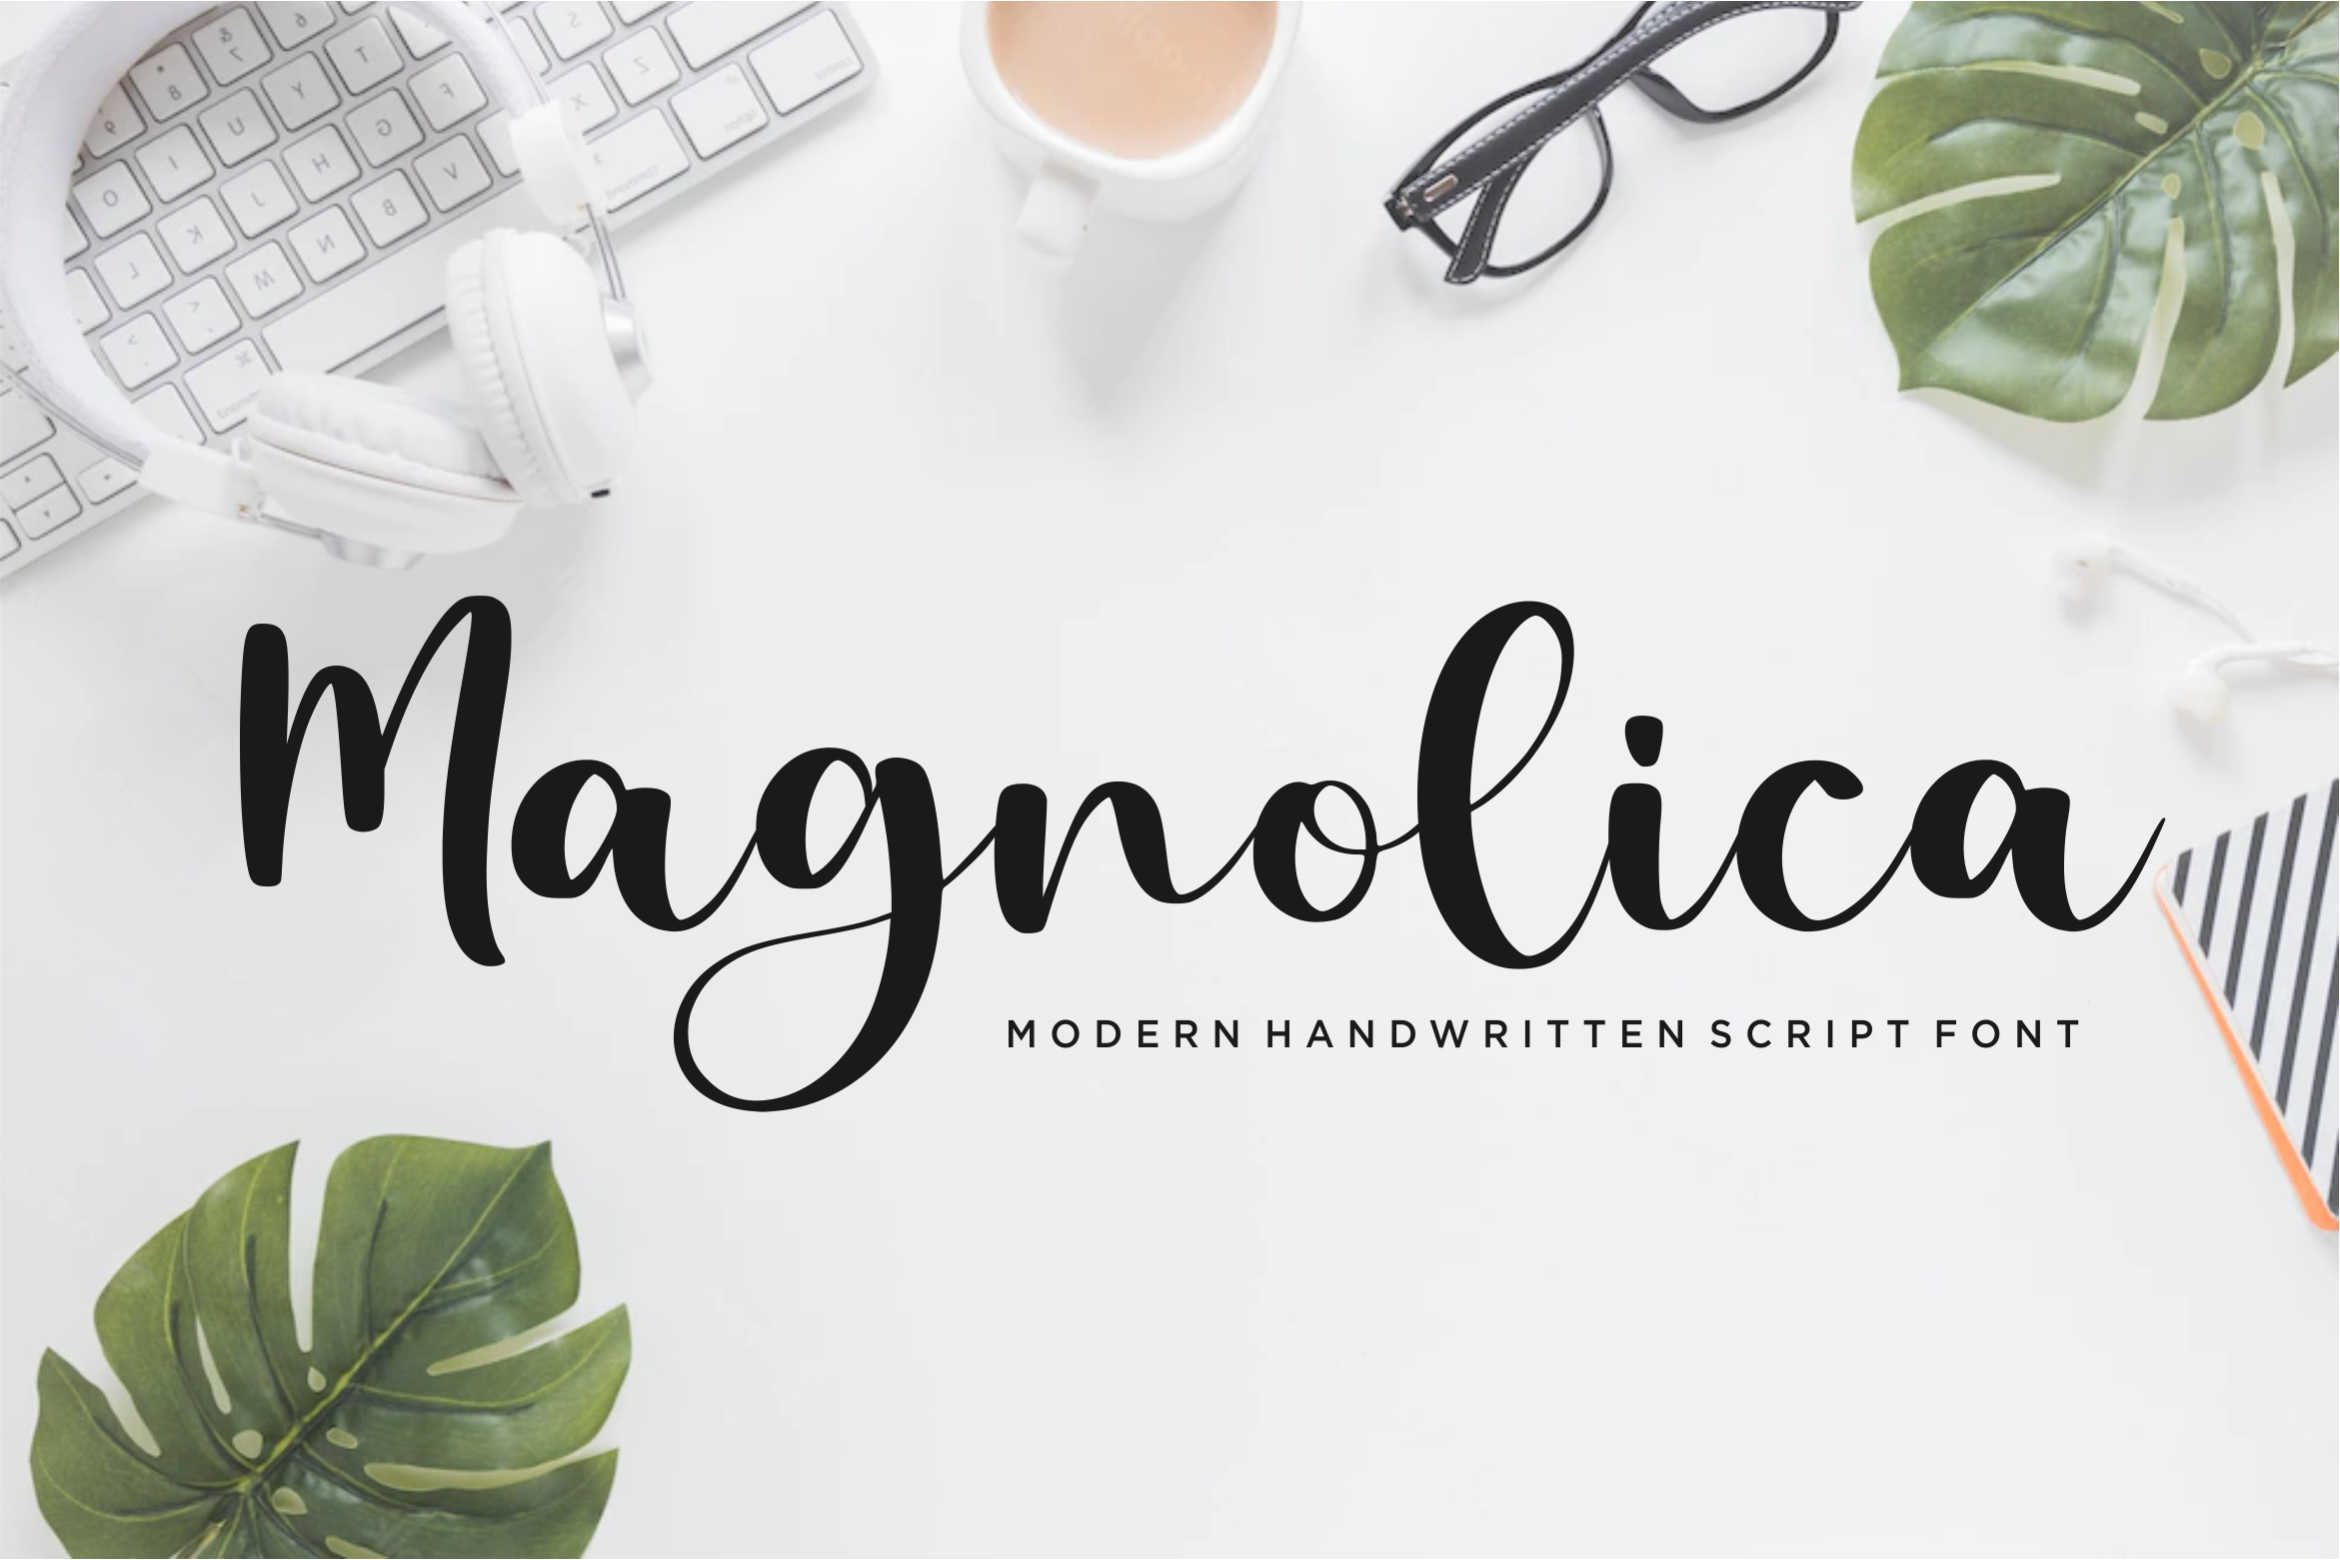 Magnolica Script Font